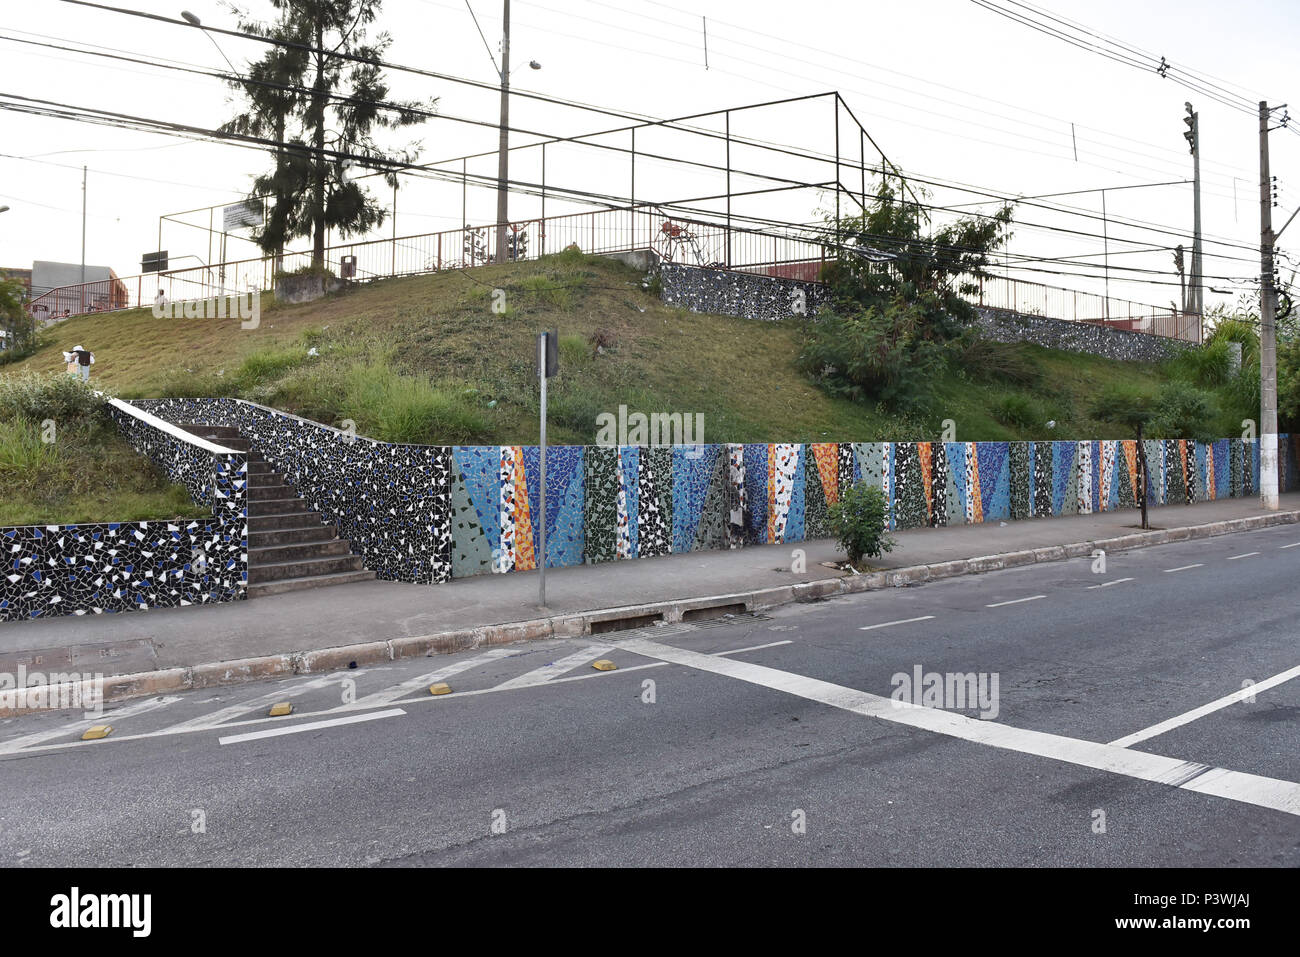 BELO Horizonte, MG - 26.04.2016: MURO DE LADRILHOS - Muro de mosaico de ladrilhos em uma praça pública, na esquina de rua Gentios com a avenida Raja Gabaglia, em Belo Horizonte (MG). (Foto: Mourão Panda / Fotoarena) Foto Stock